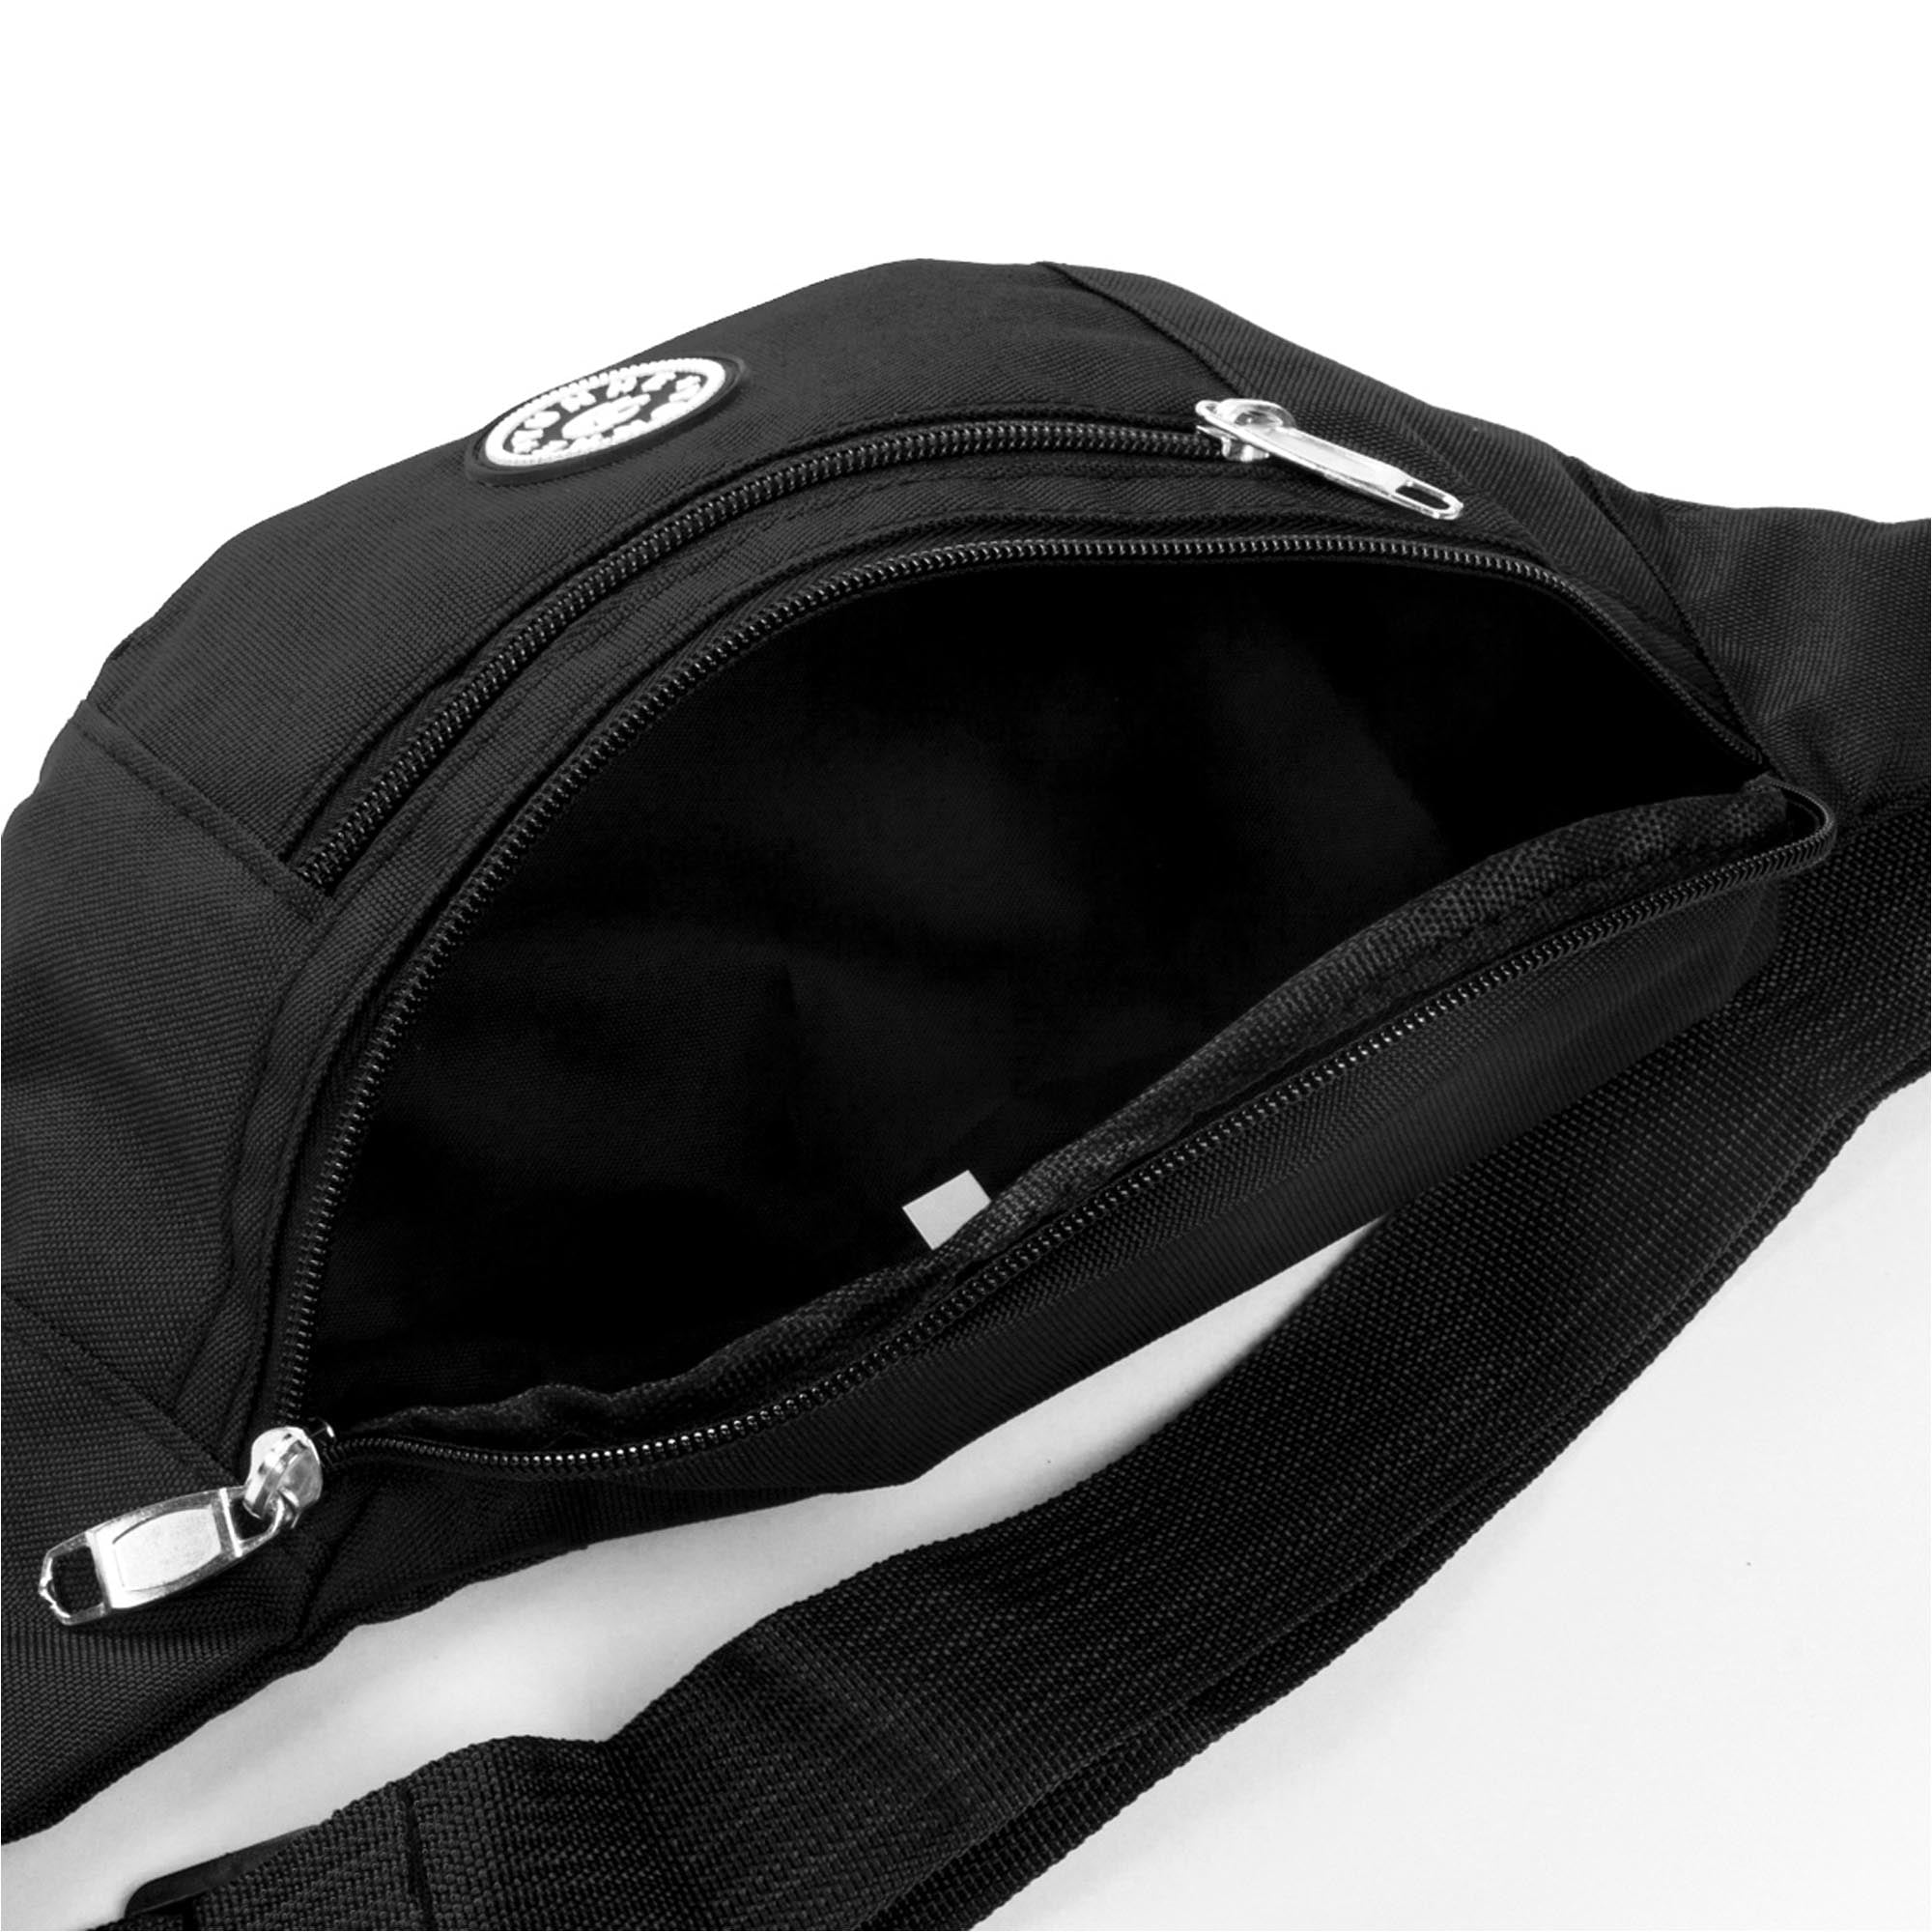 Mildsown SUNSIOM Fanny Pack Waist Bag Men Women Crossbody Hip Belt Pouch Pocket Travel Sport Bum, Women's, Size: One size, Black